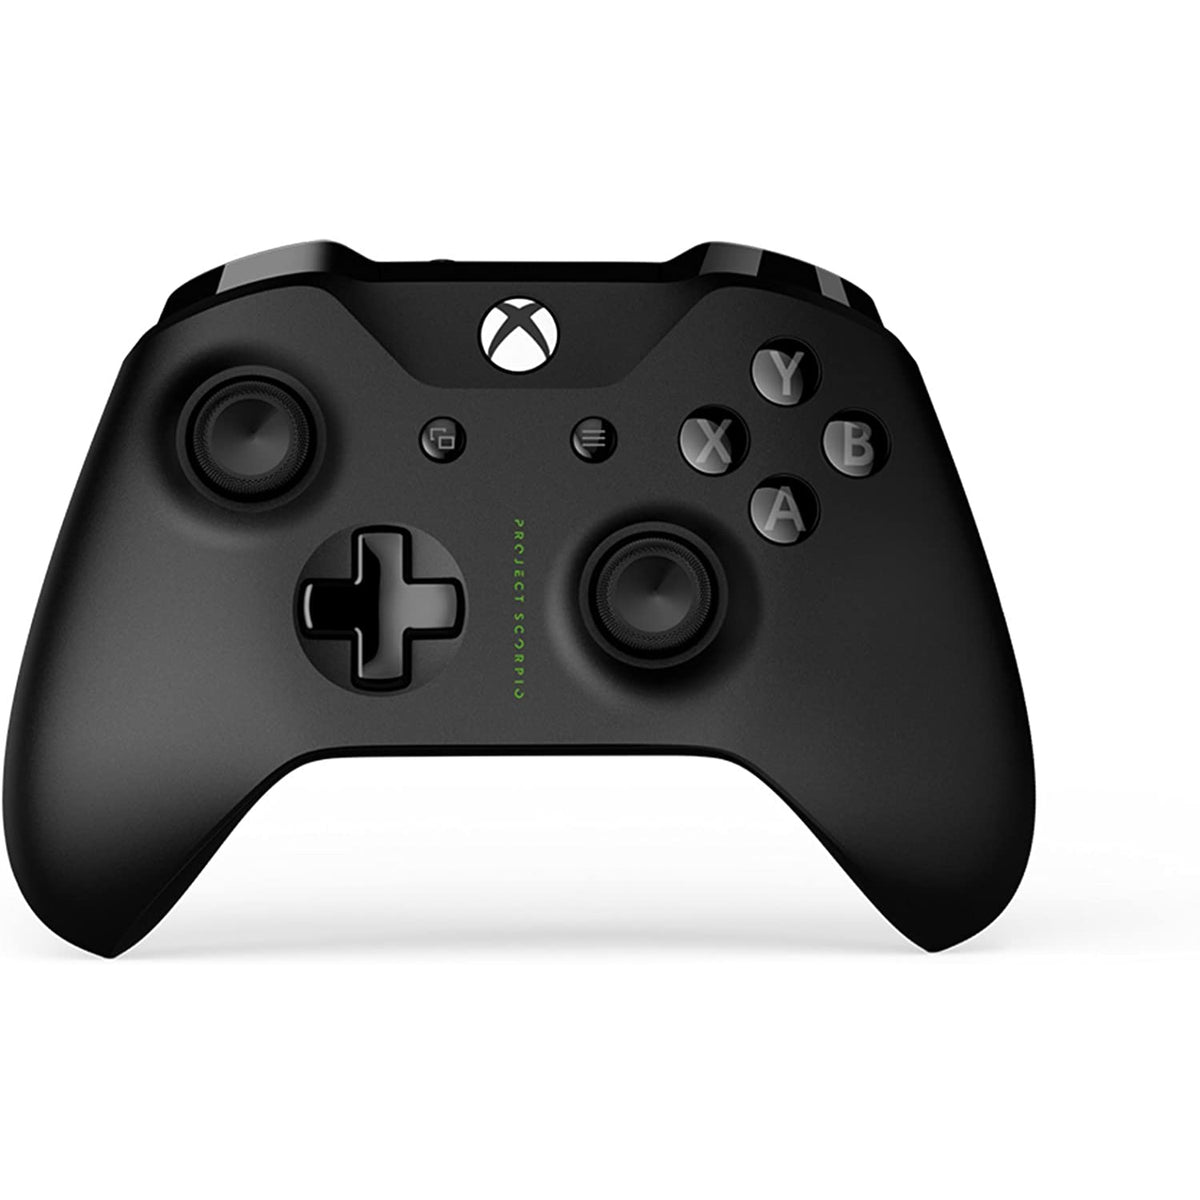 Xbox One X Console 1TB Project Scorpio Edition - Refurbished Pristine